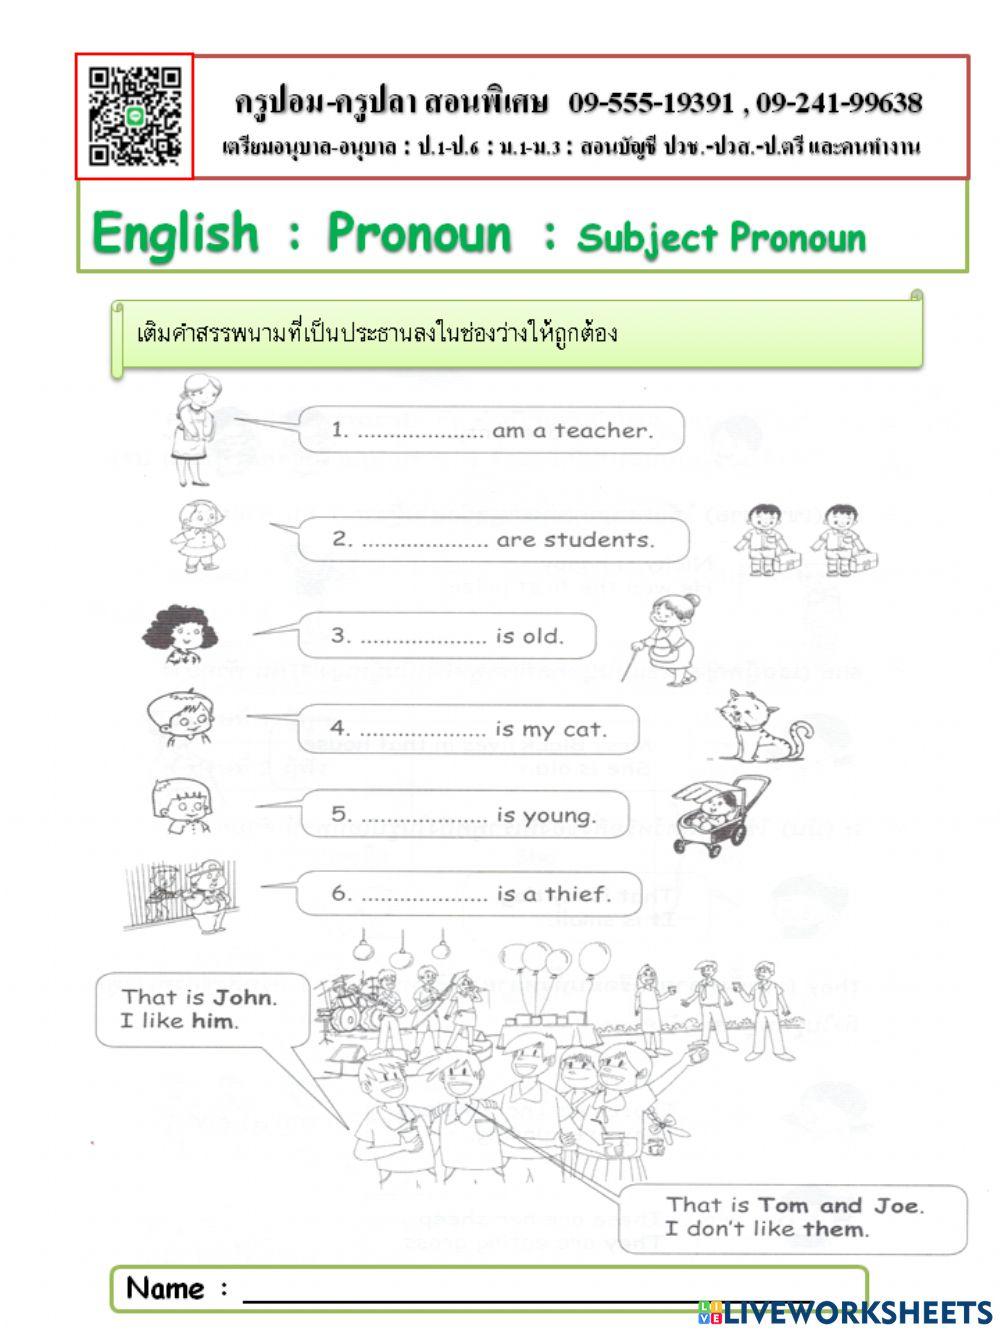 Subject Pronoun